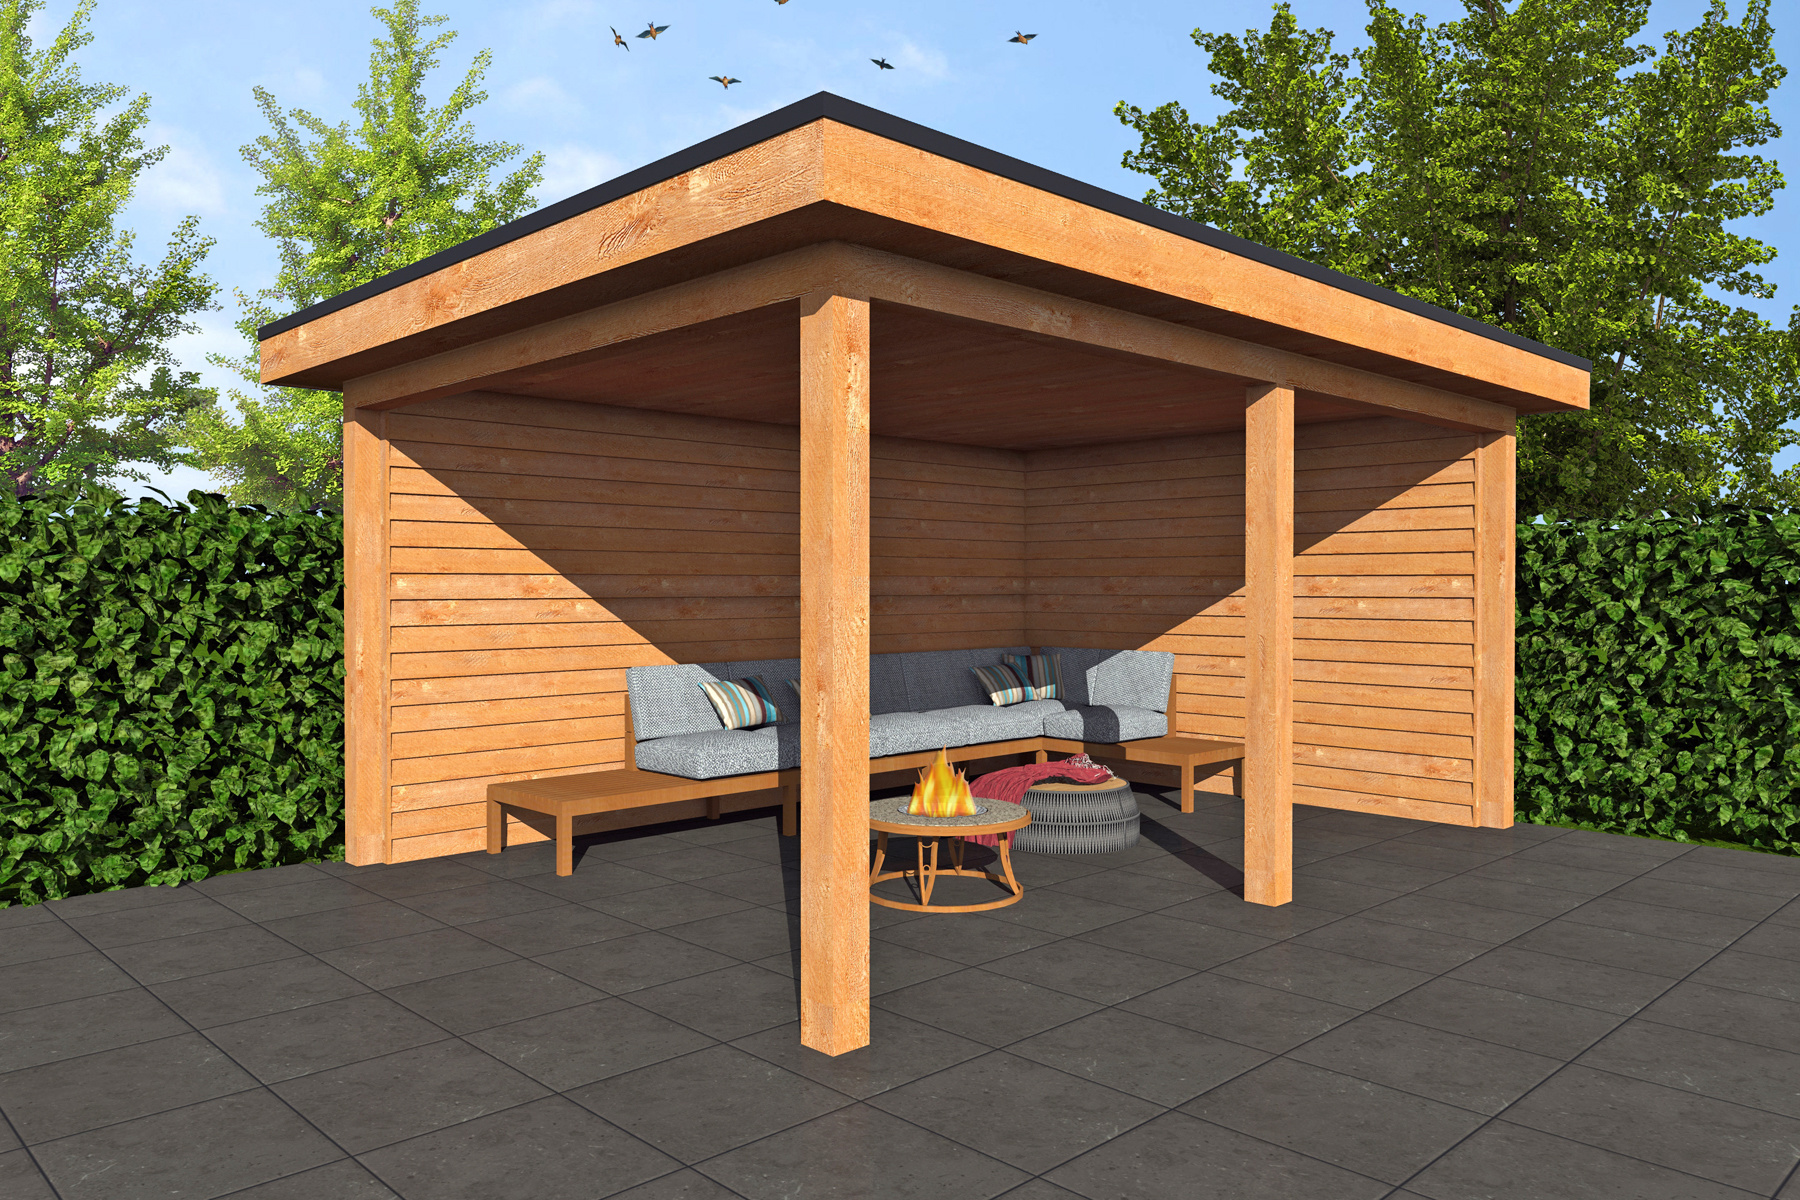 slaaf Bedenk Krijt Houten veranda plat dak 250 x 400 cm | Gratis thuisbezorgd in NL -  Moduhout.nl